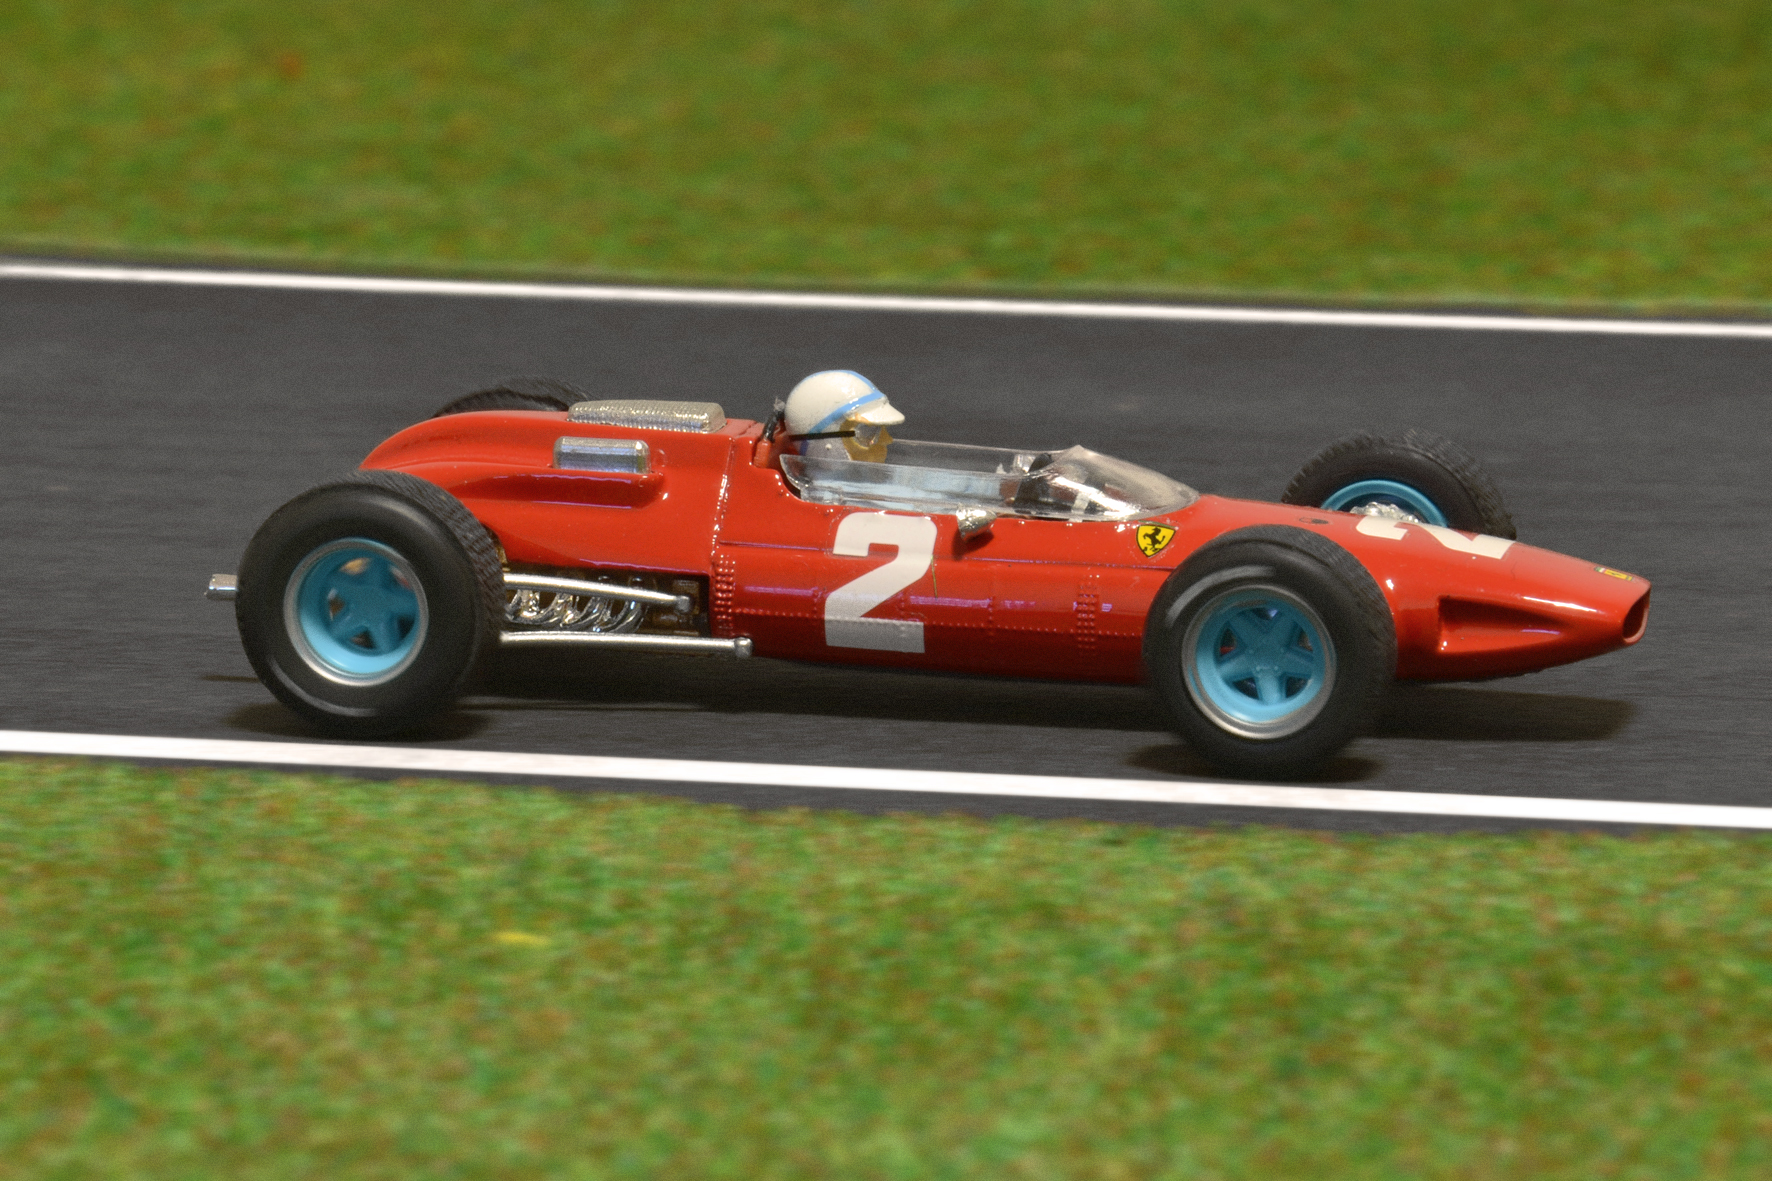 Ferrari 158 John Surtees 1964 - Brumm 1:43